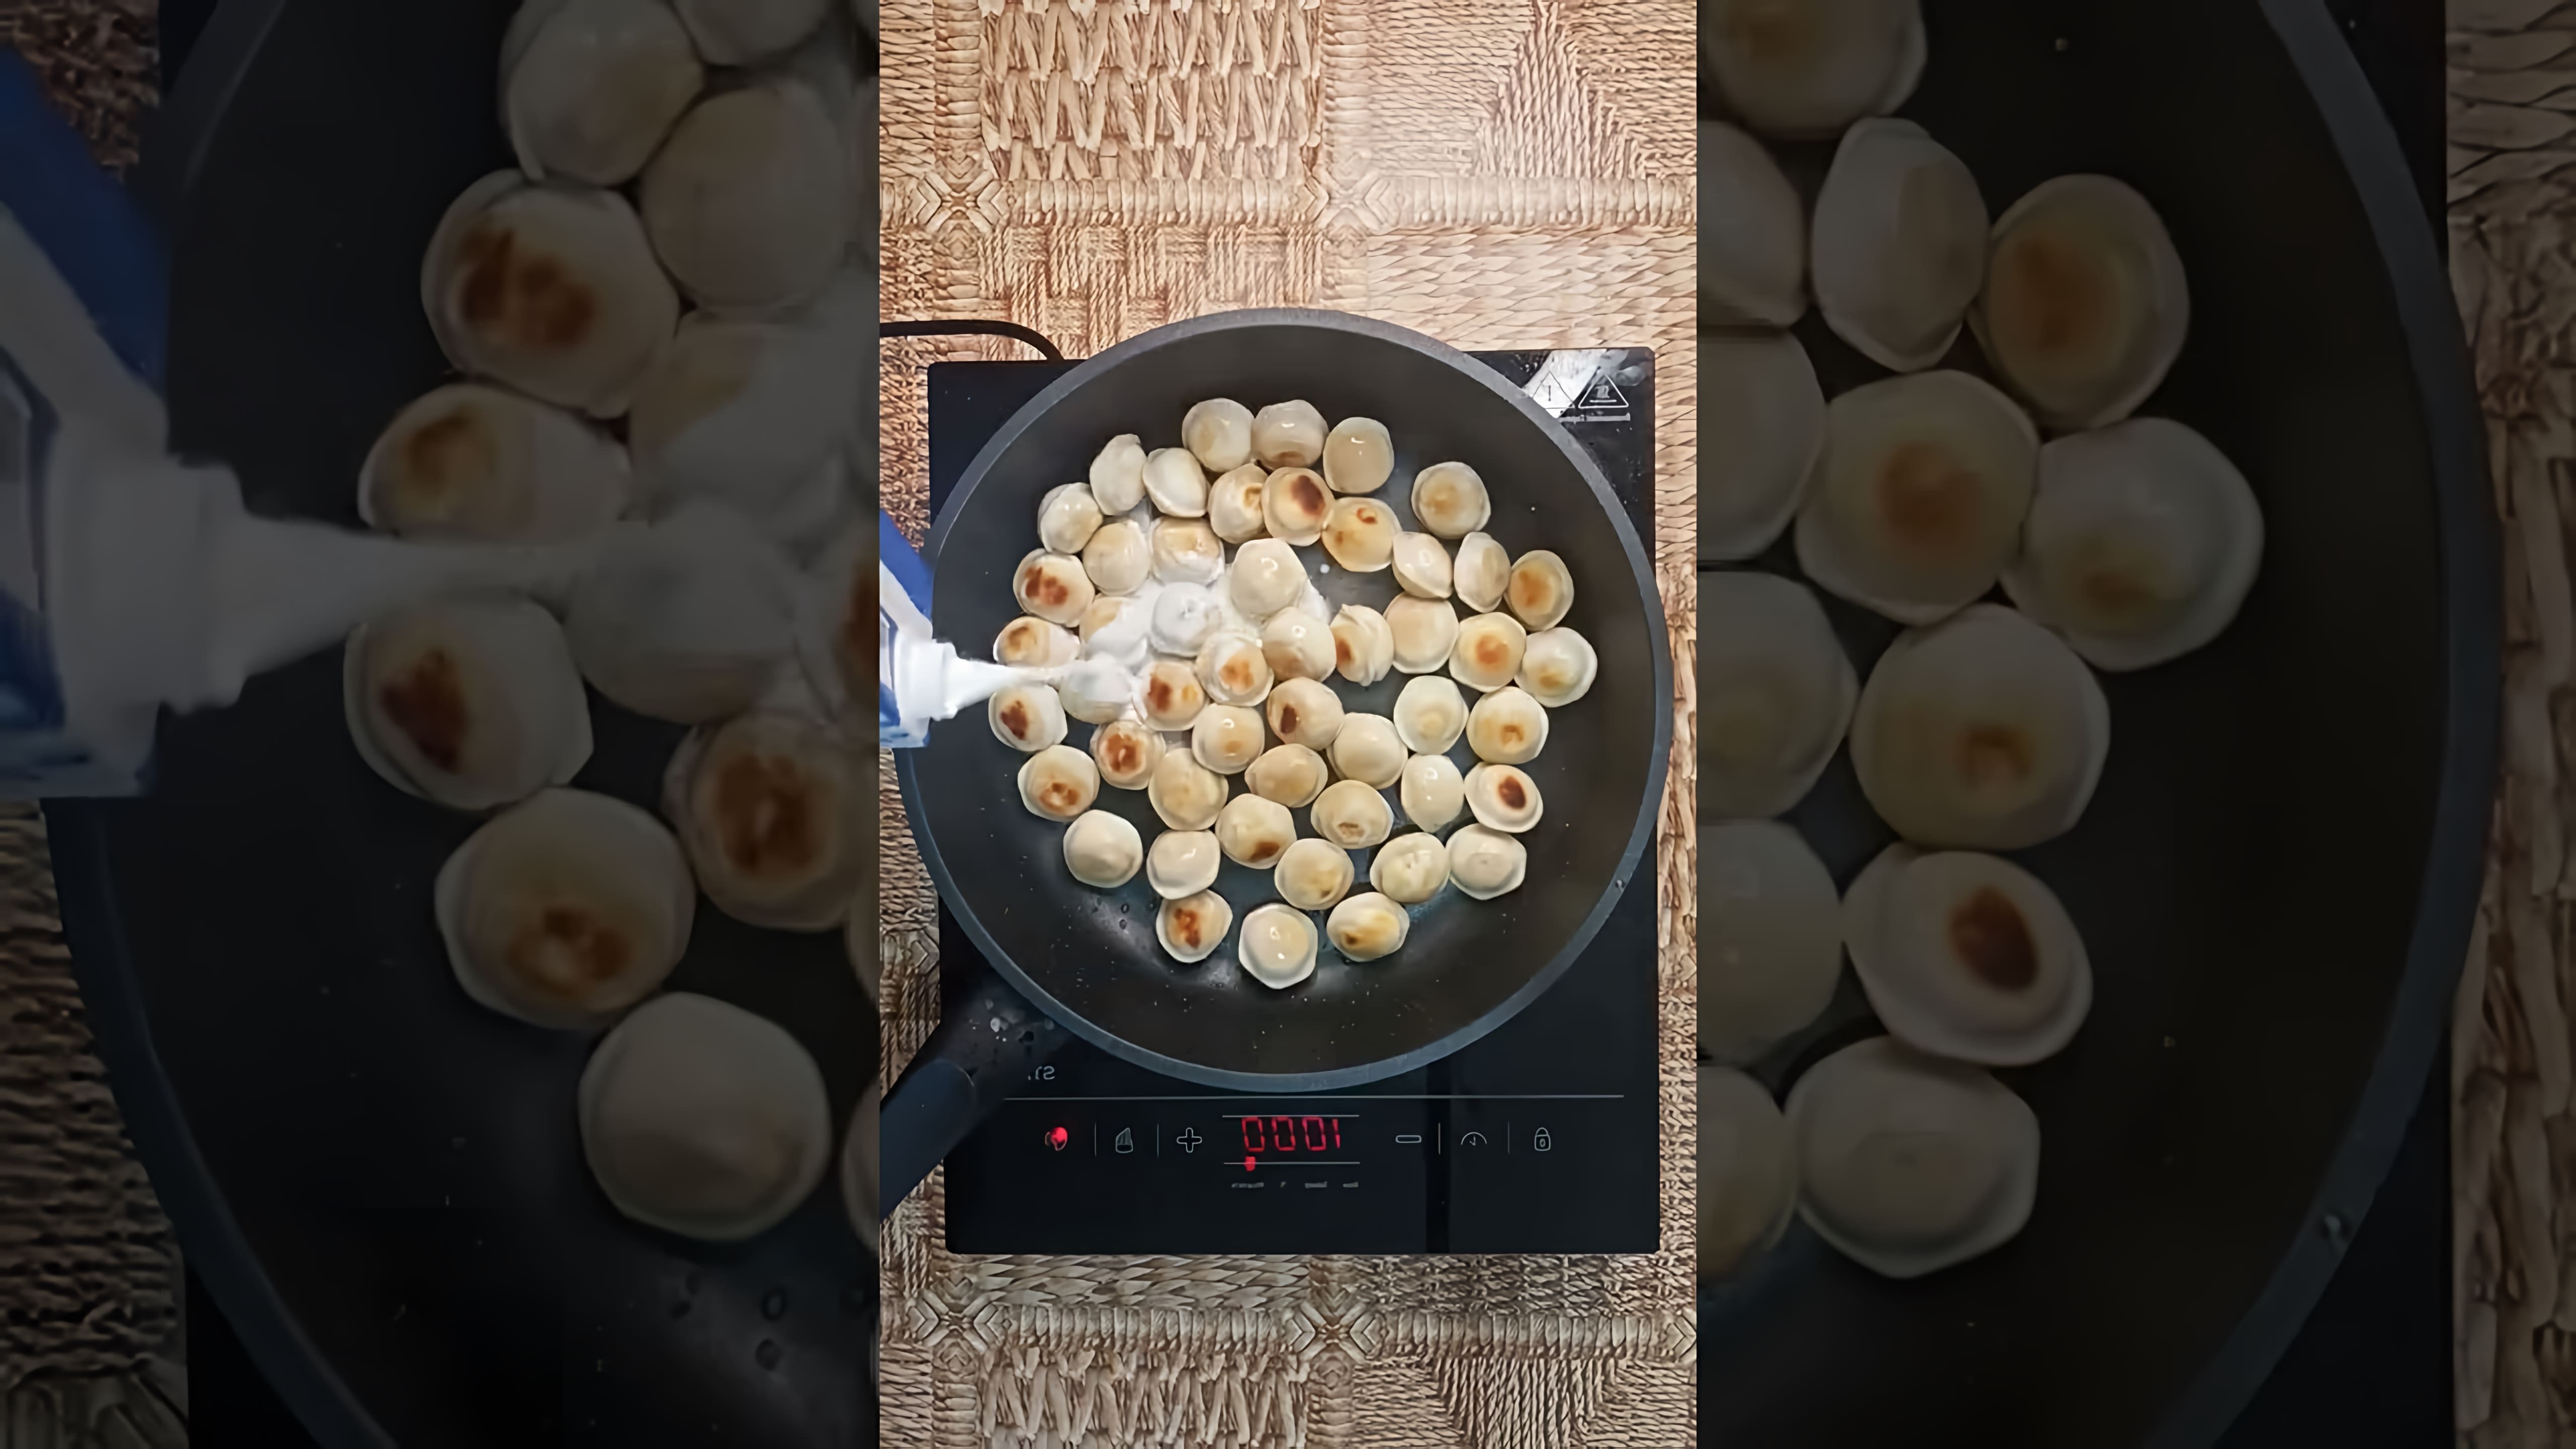 В этом видео демонстрируется рецепт приготовления пельменей в сырно-сливочном соусе